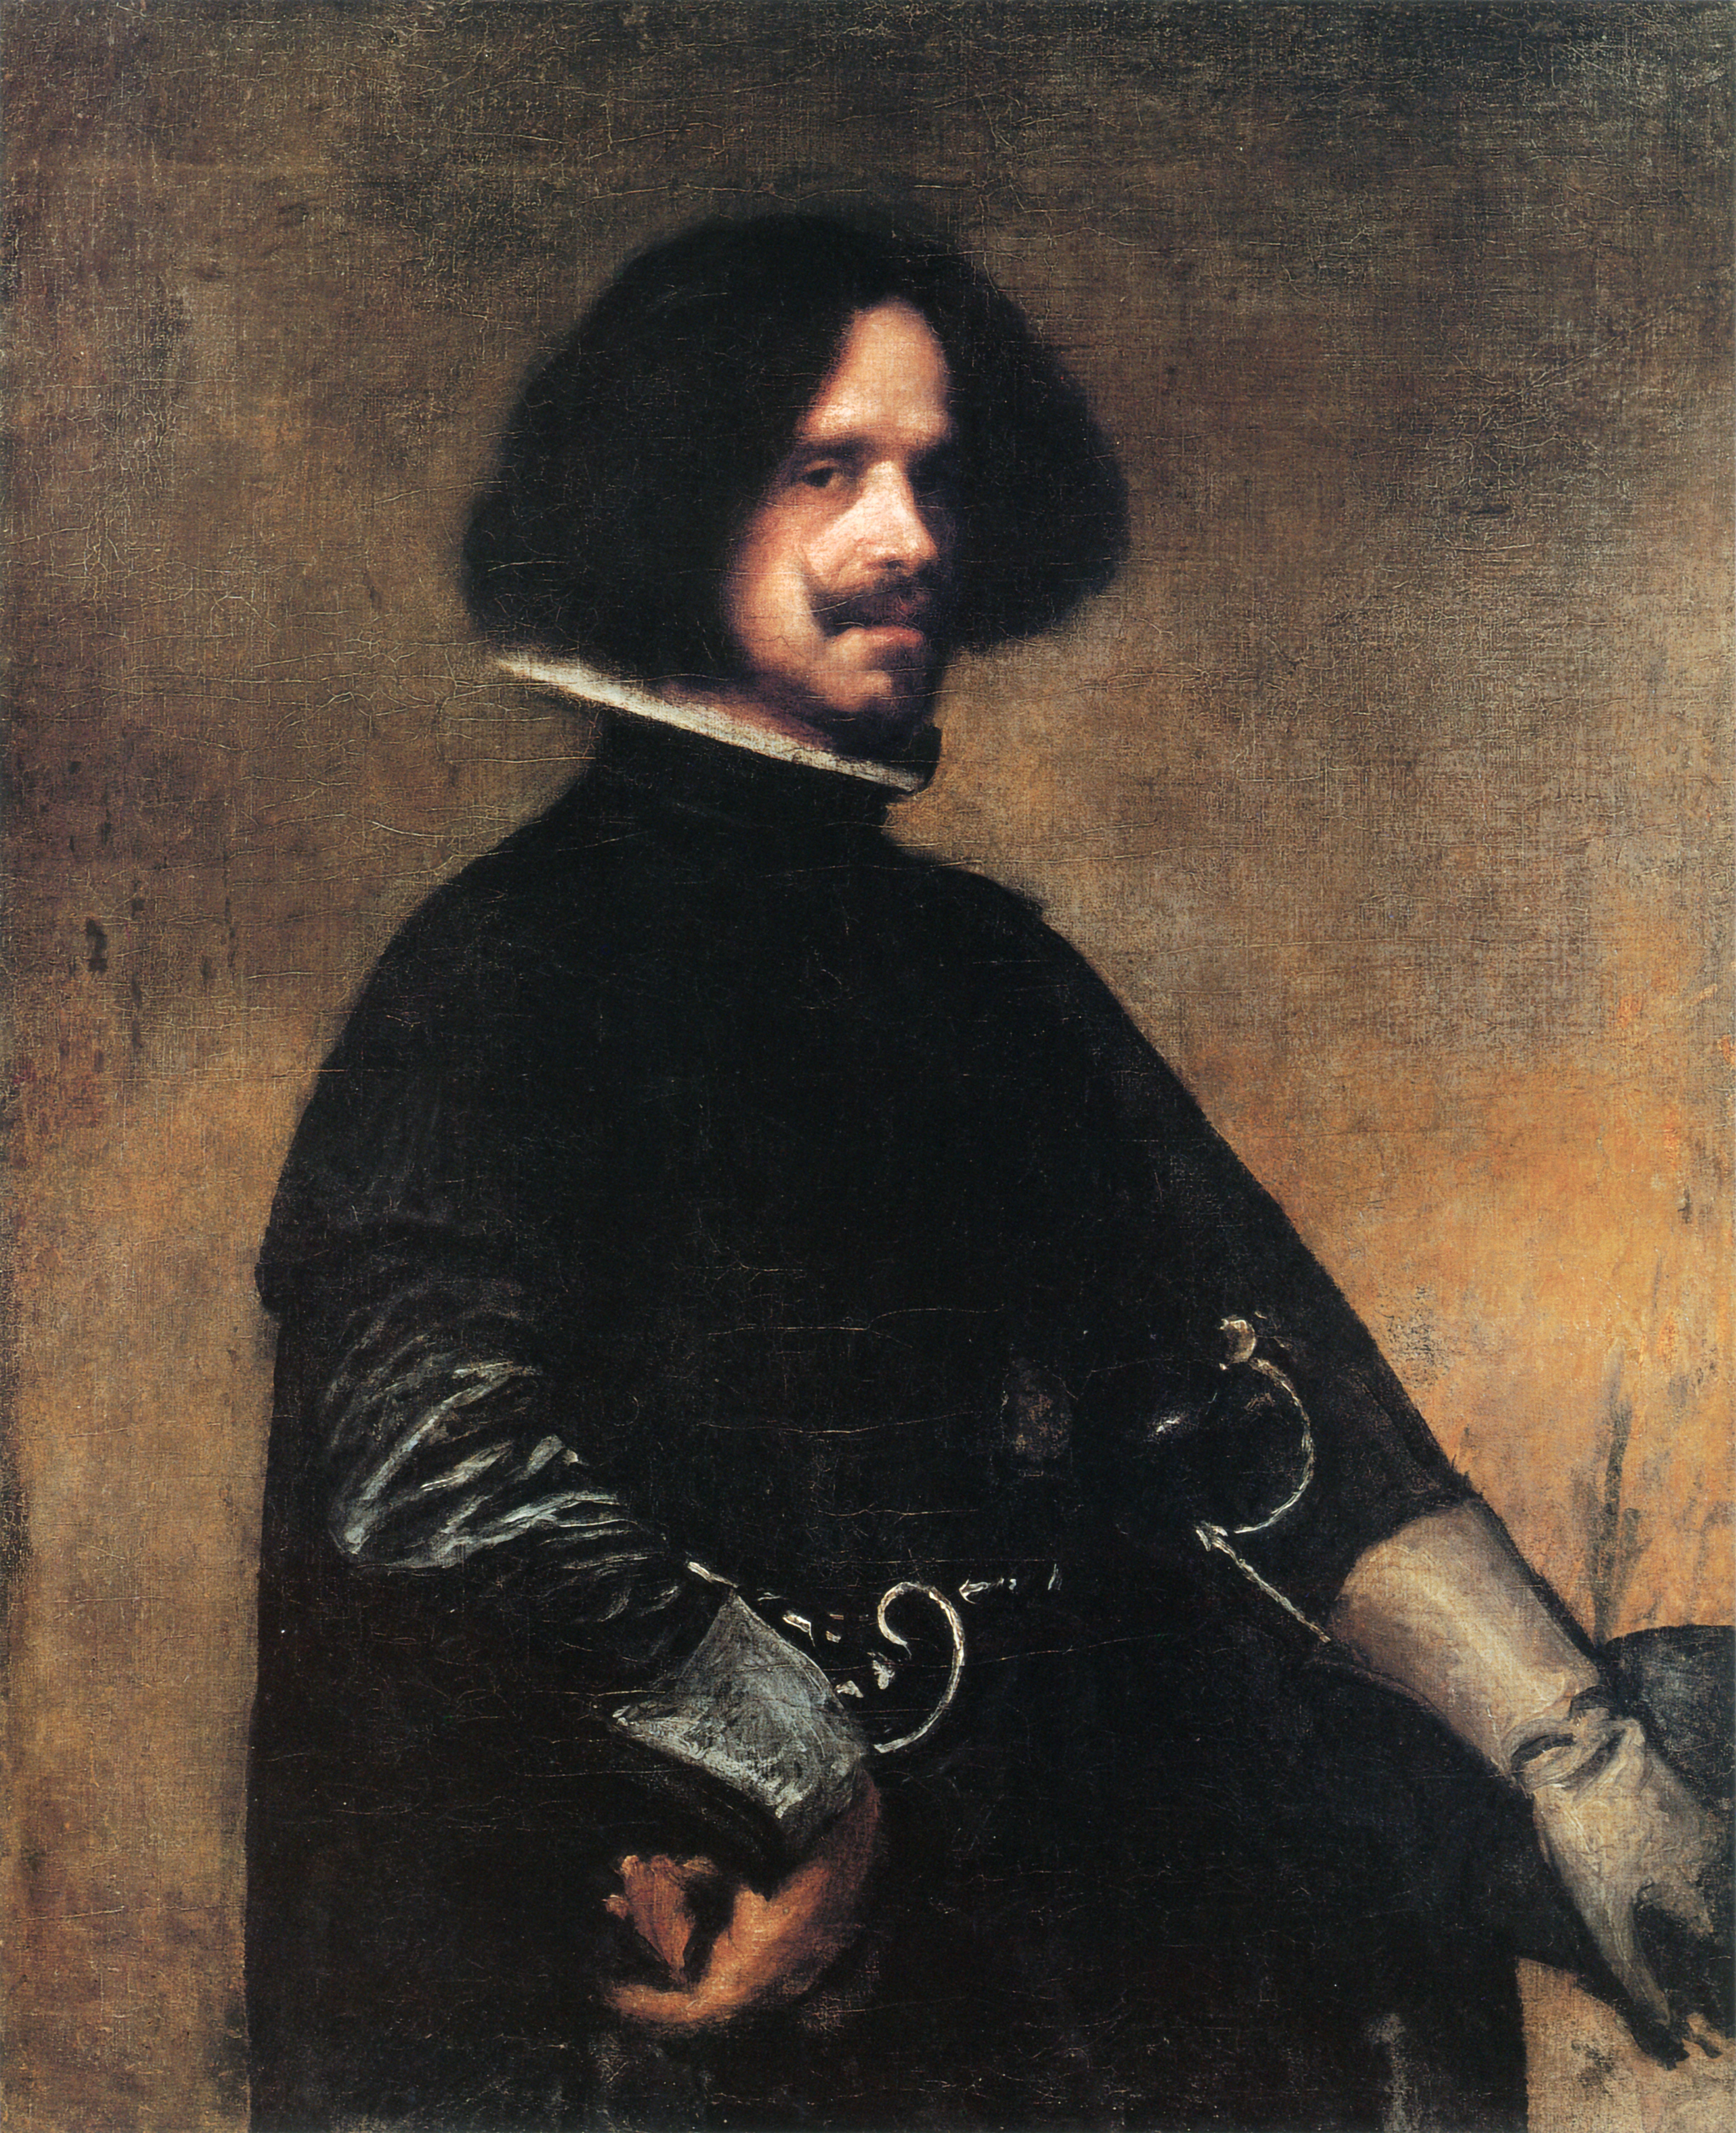 Диего Веласкес - крещен 6 июня 1599 -  6 августа 1660